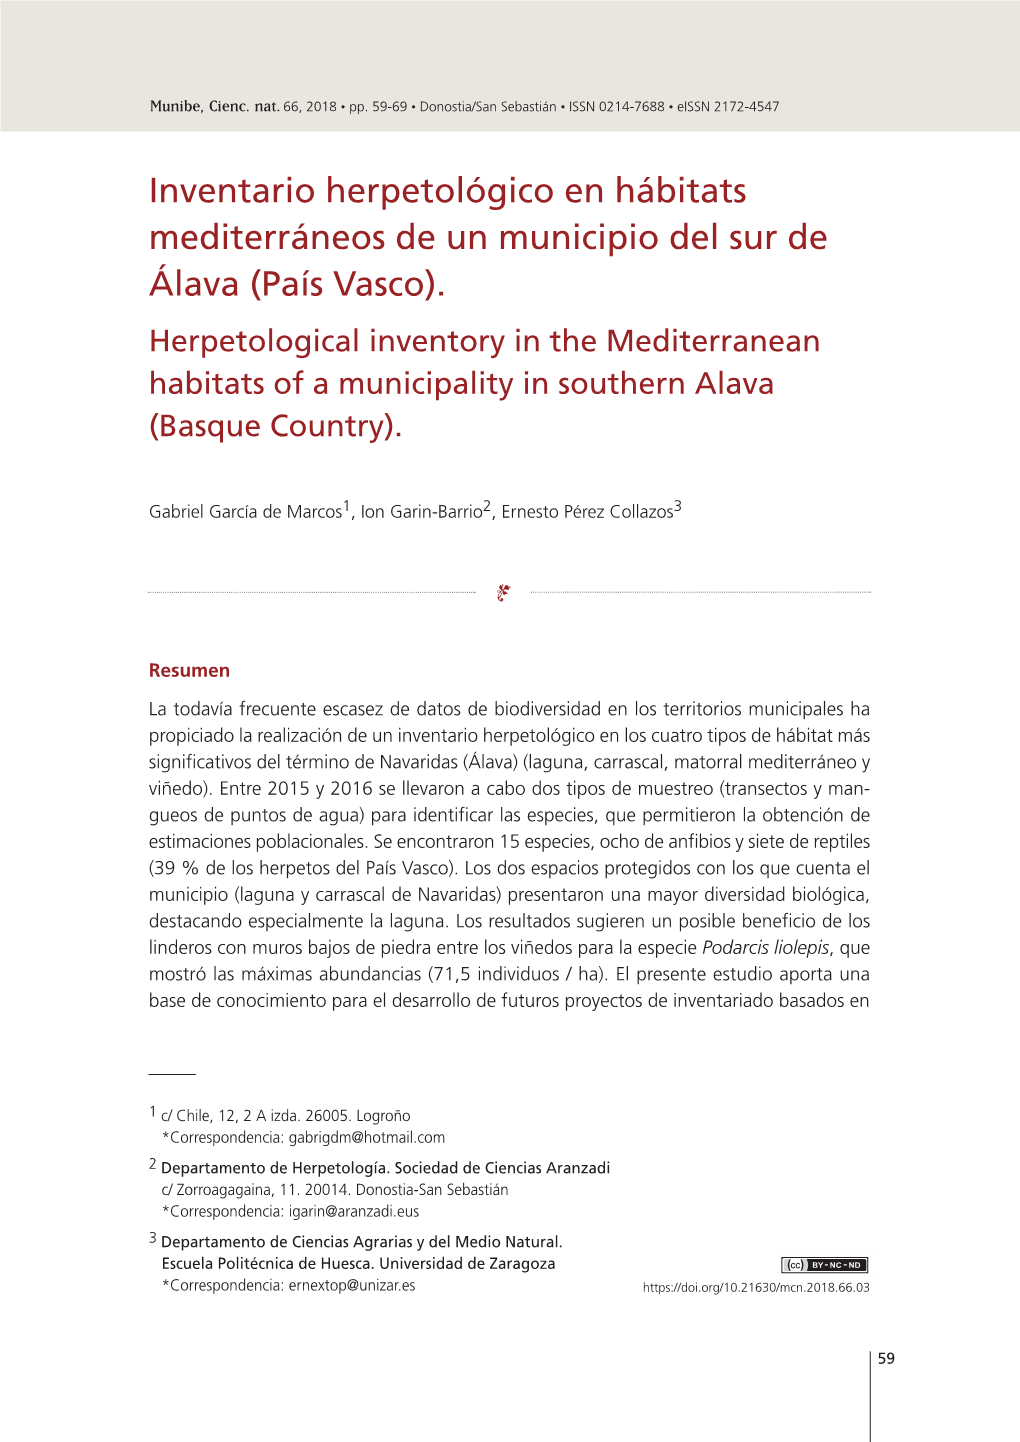 Inventario Herpetológico En Hábitats Mediterráneos De Un Municipio Del Sur De Álava (País Vasco)